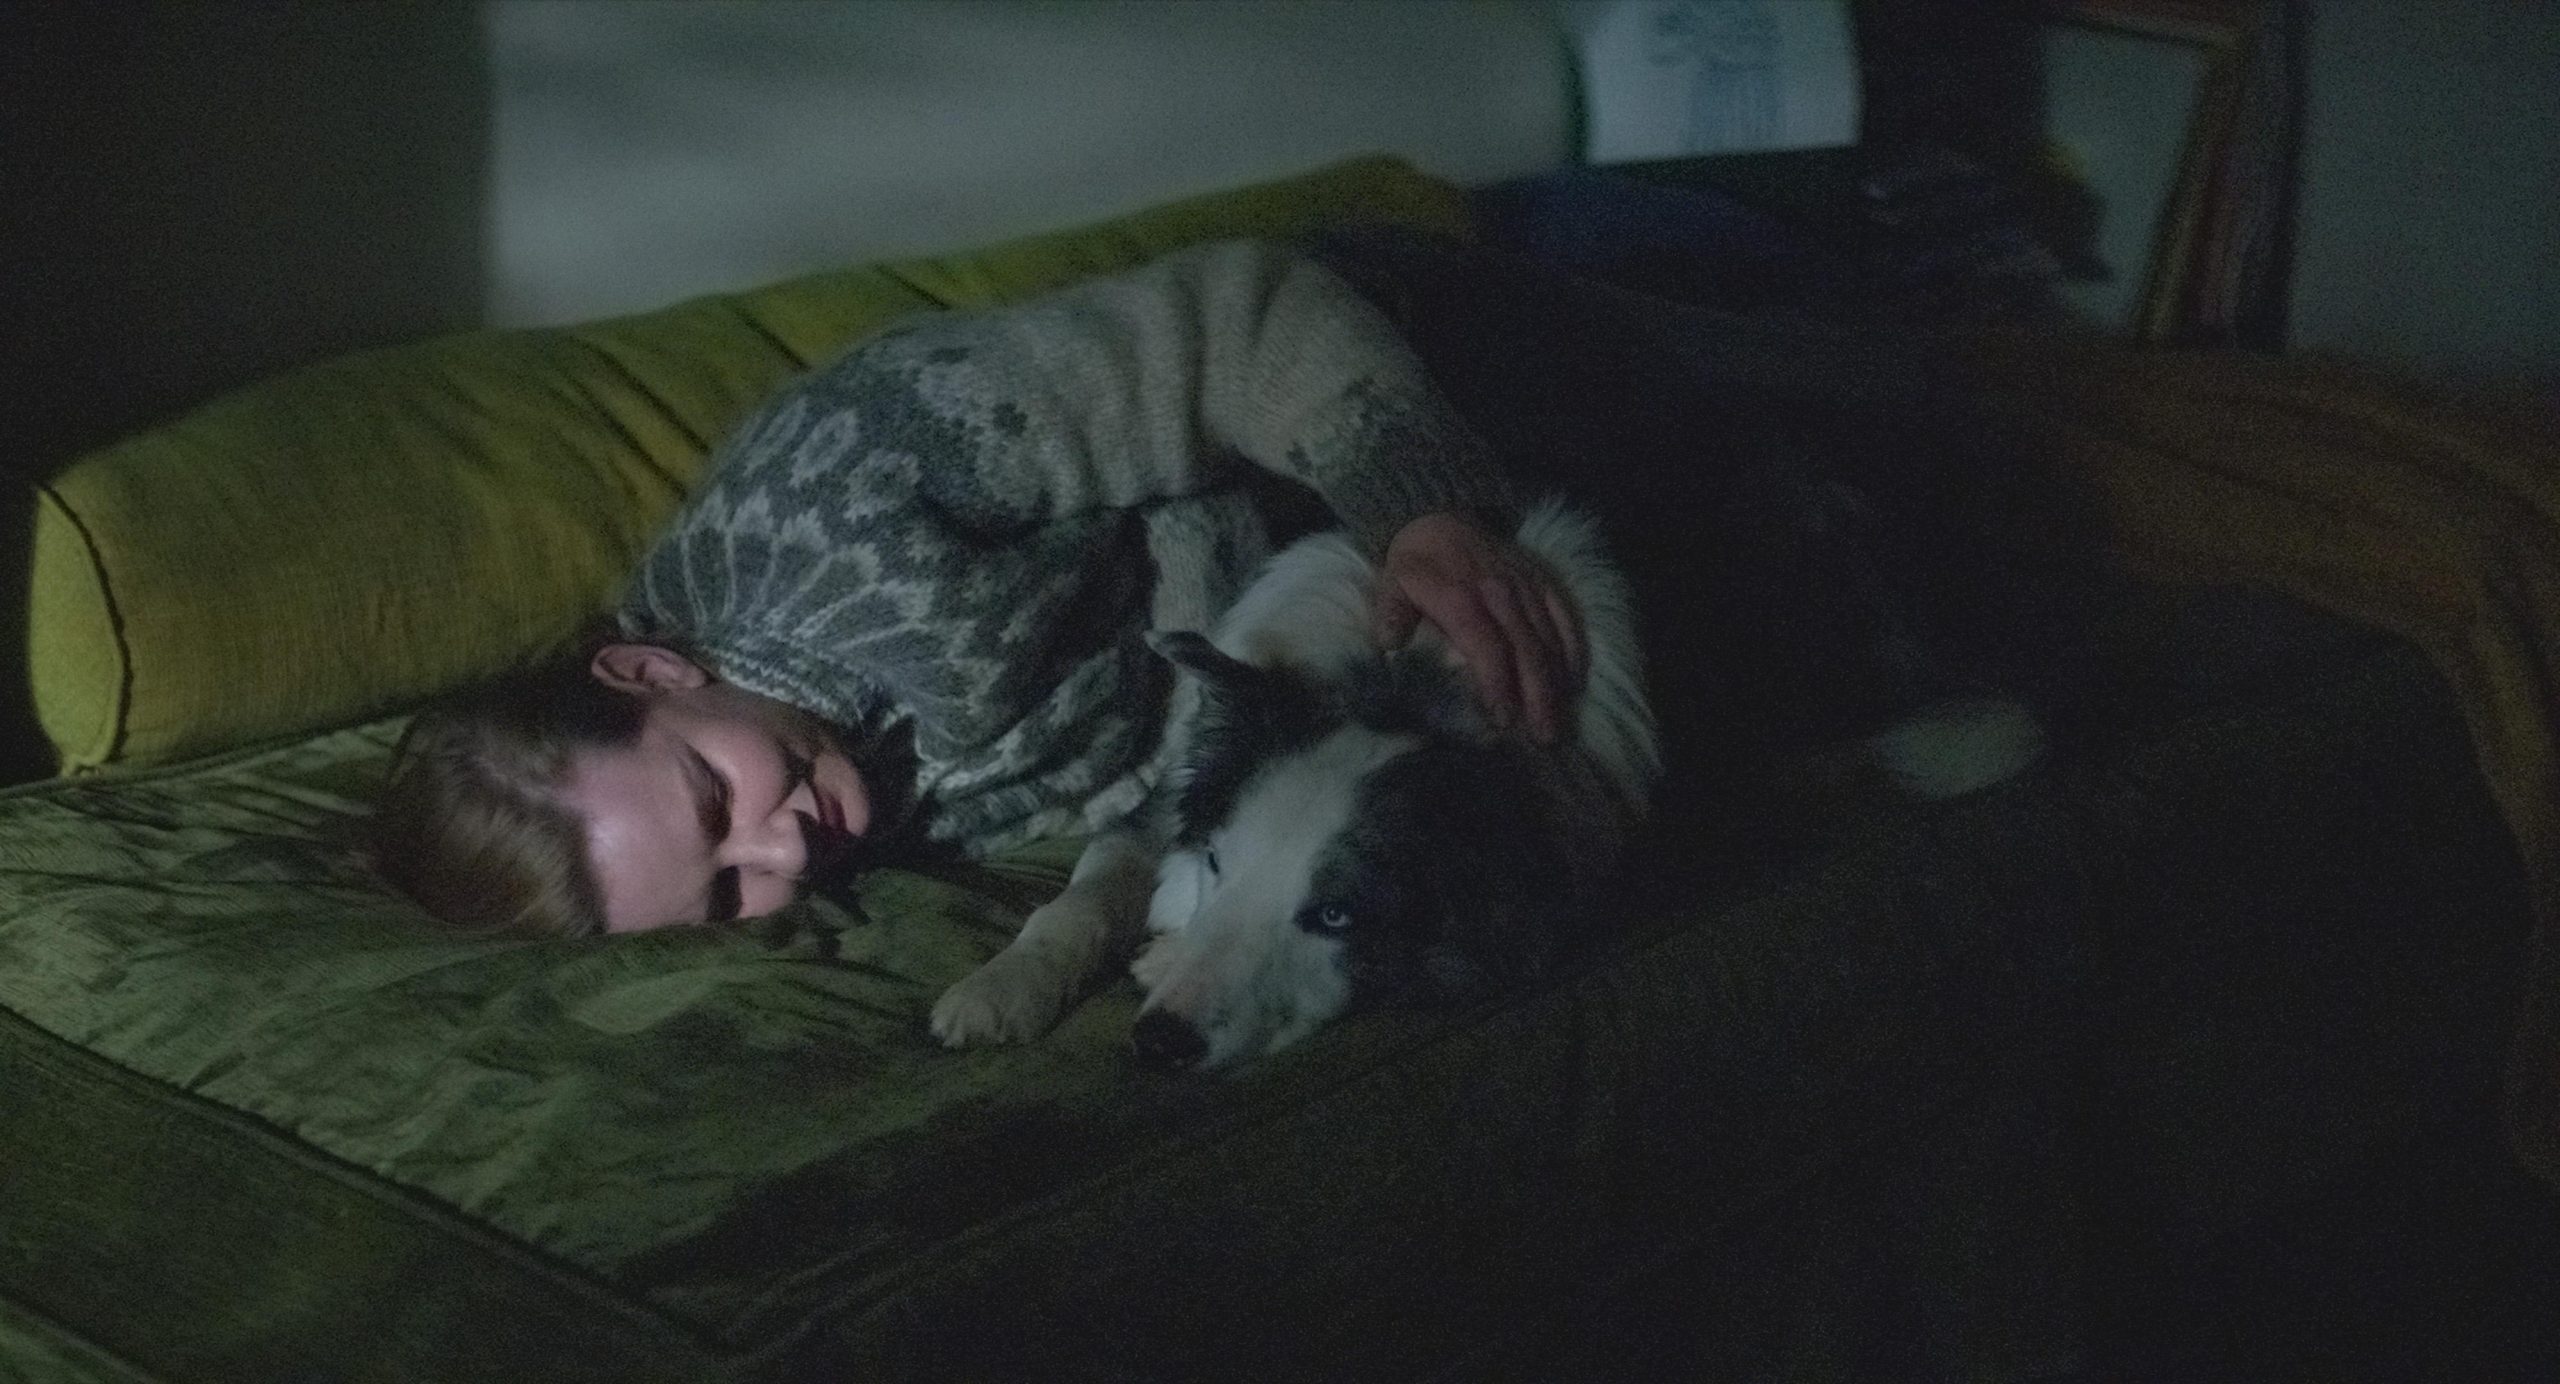 frame del film "Anatomia di una caduta" dove la protagonista è su un divano verde e guarda a un gato; la luce dalla finestra fa capire che è notte.